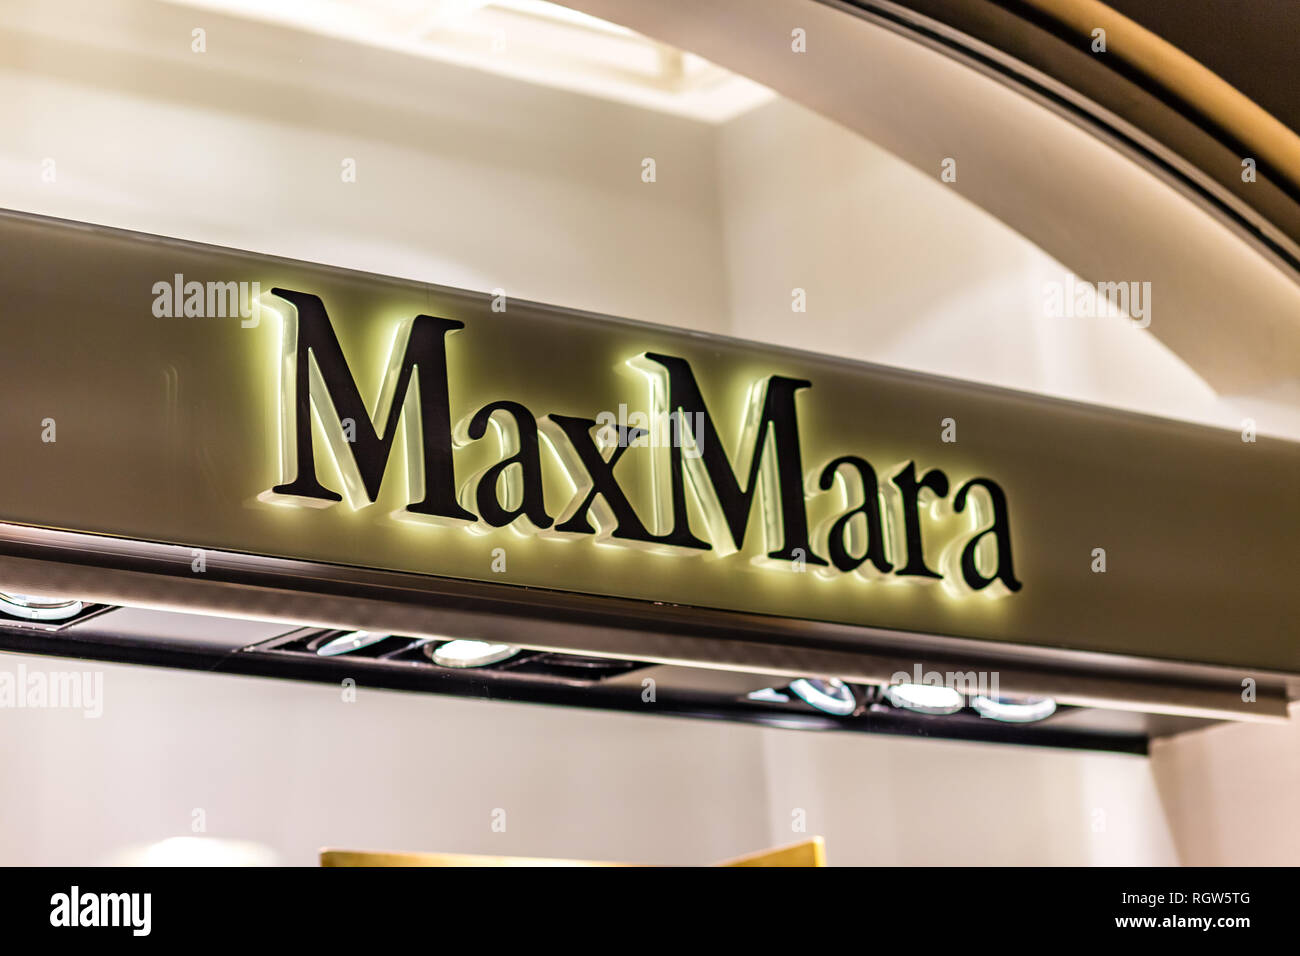 RAVENNA, ITALIE - Le 17 janvier 2019 : lumières sont éclairantes MaxMara logo sur storefront Banque D'Images